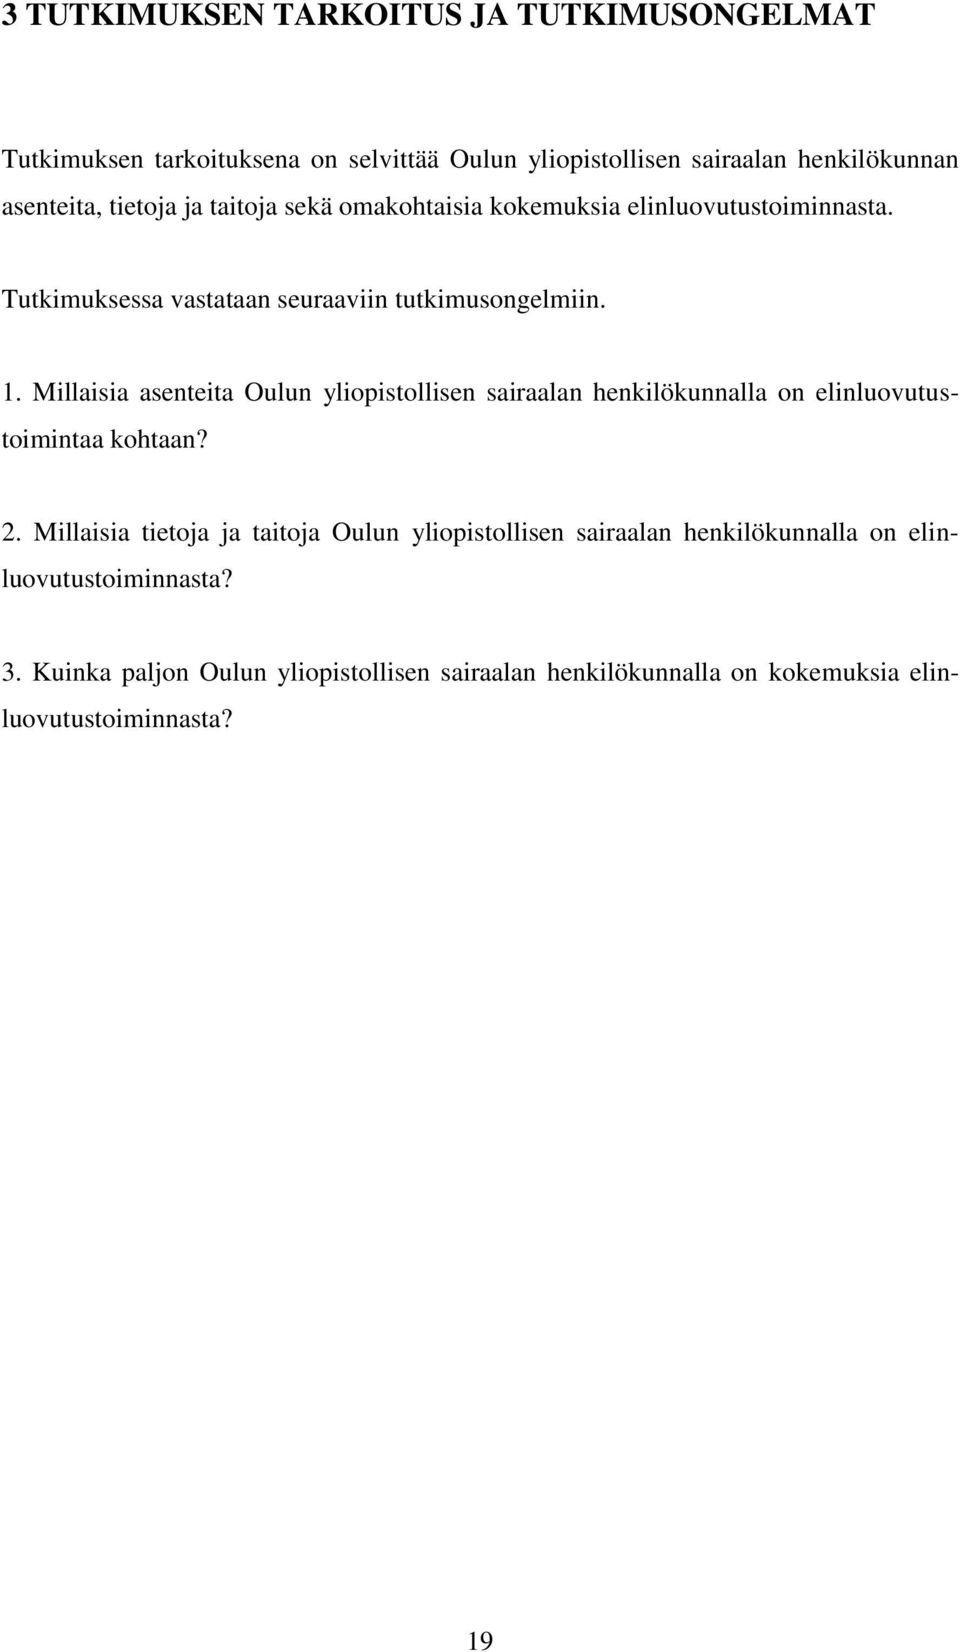 Millaisia asenteita Oulun yliopistollisen sairaalan henkilökunnalla on elinluovutustoimintaa kohtaan? 2.